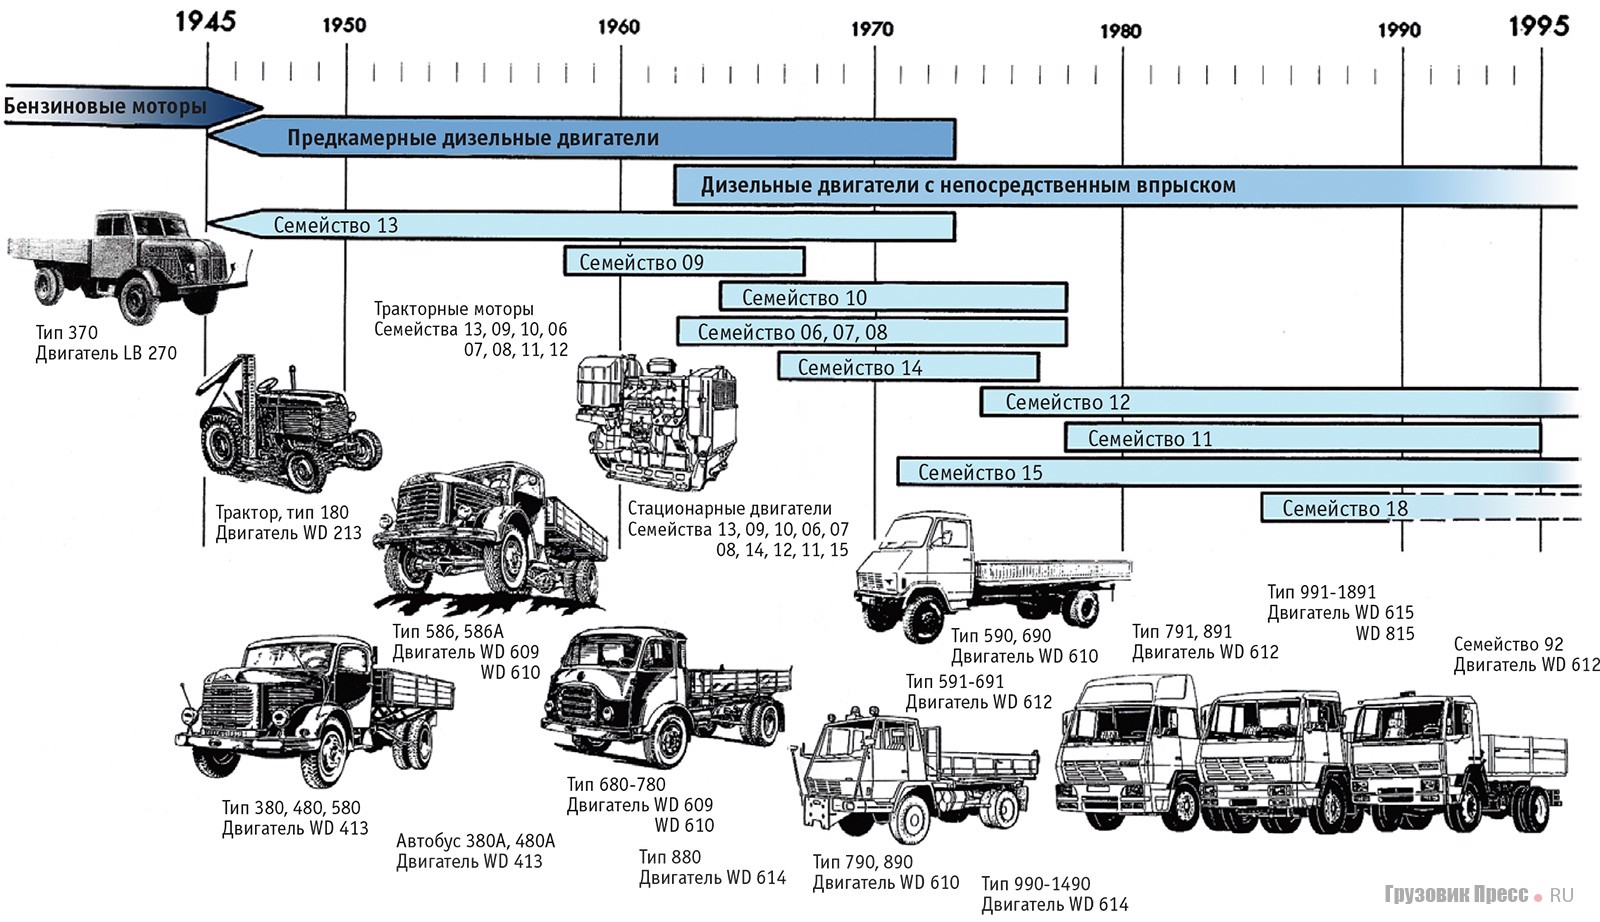 Развитие модельных рядов дизельных двигателей и грузовых автомобилей фирмы Steyr в 1945-1990 гг.